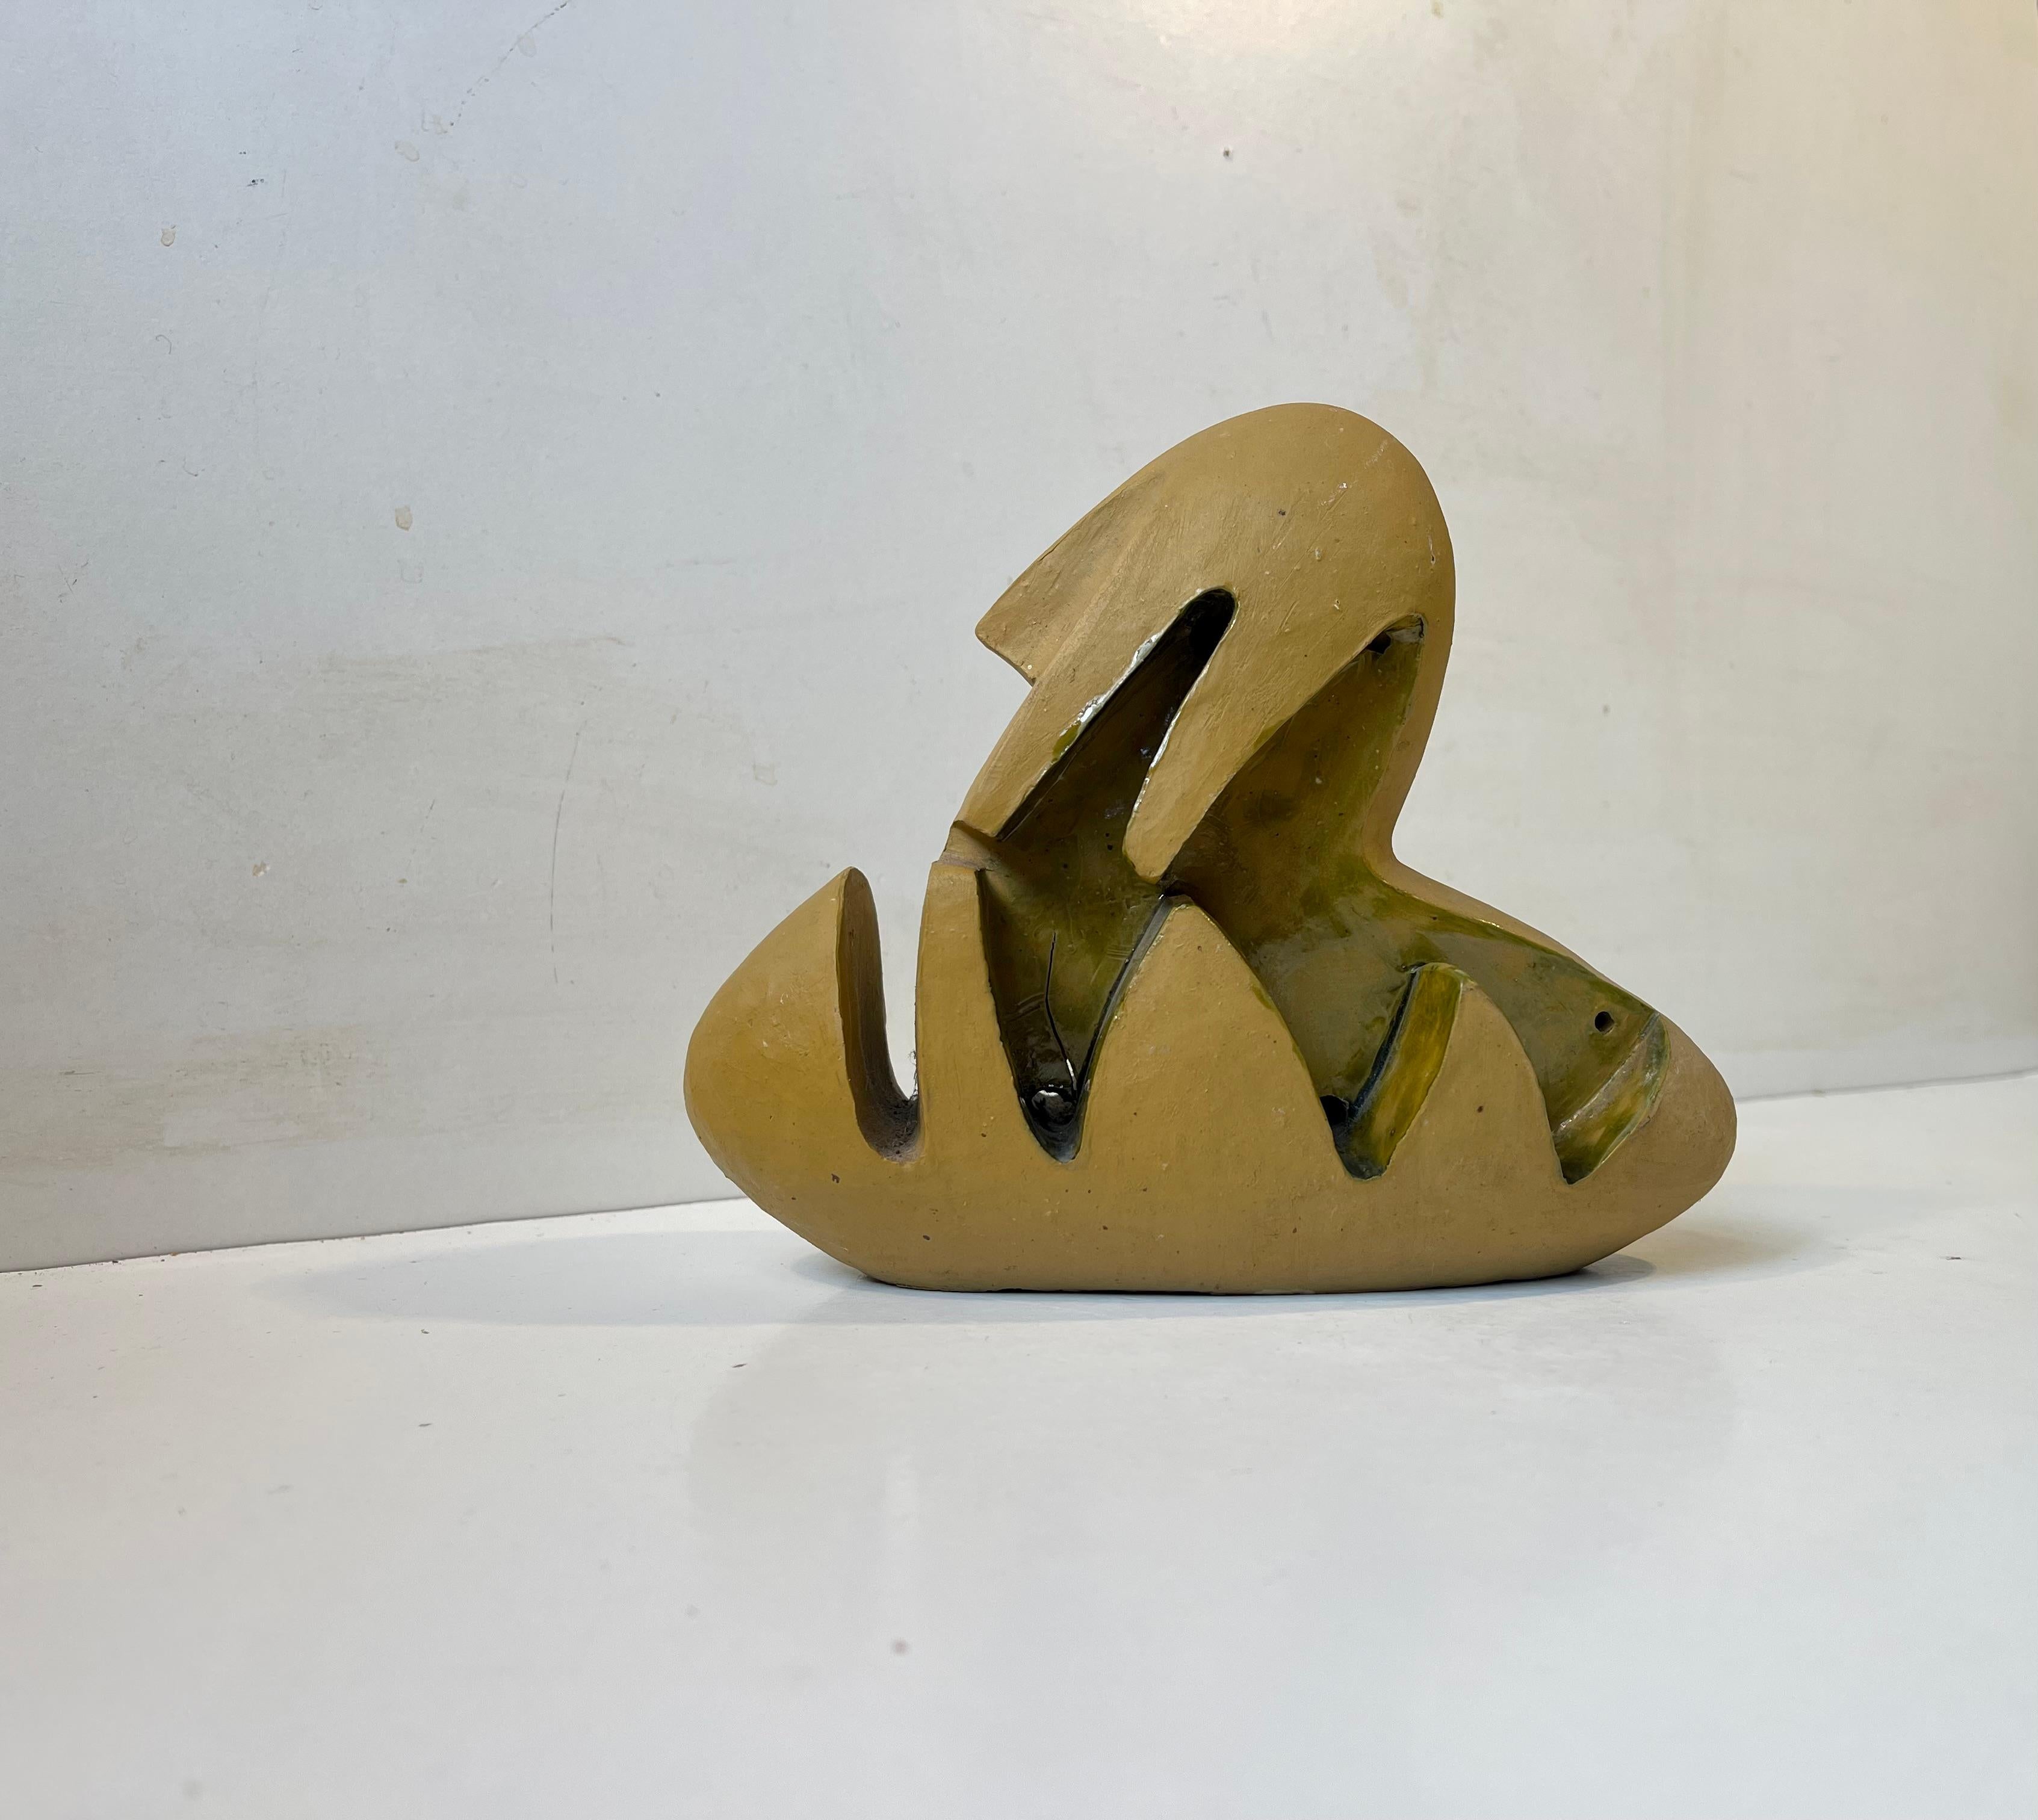 Eine skulpturale surrealistische Figur/Ornament aus teilweise glasierter und handbemalter Keramik aus den 1960er Jahren. Eine abstrakte Form A, die auf einer eiförmigen Grundform basiert. Die Hauptfarbe ist Senf und die aufgetragene Glasur